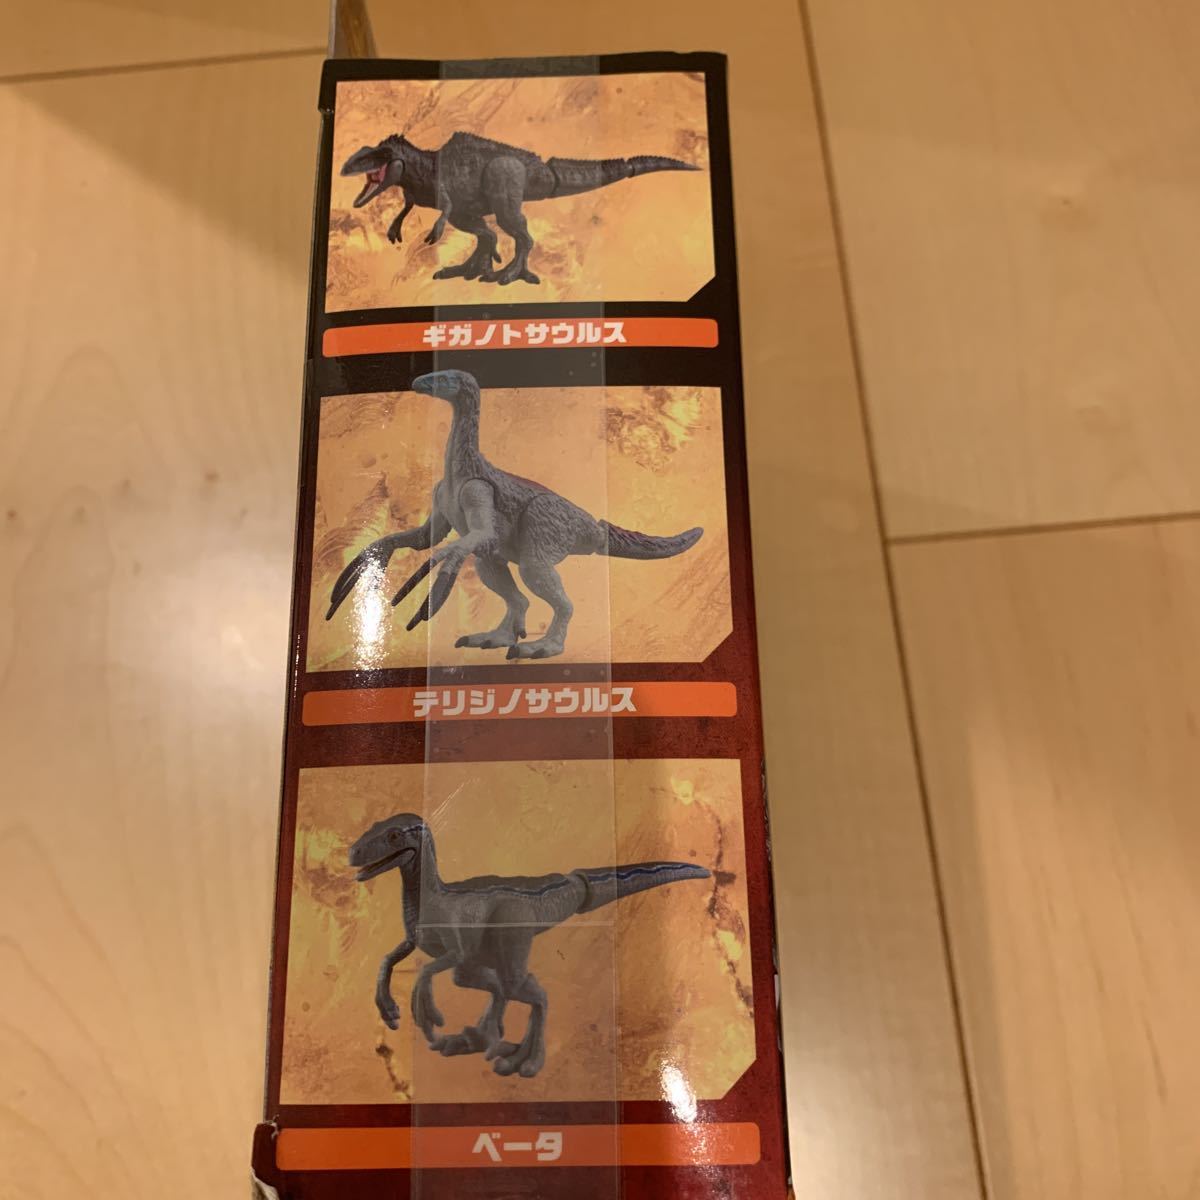 タカラトミー 『アニア ジュラシックワールド 新恐竜たちの激闘セット』 動物 恐竜 フィギュア おもちゃ アニアアニマルアドベンチャー